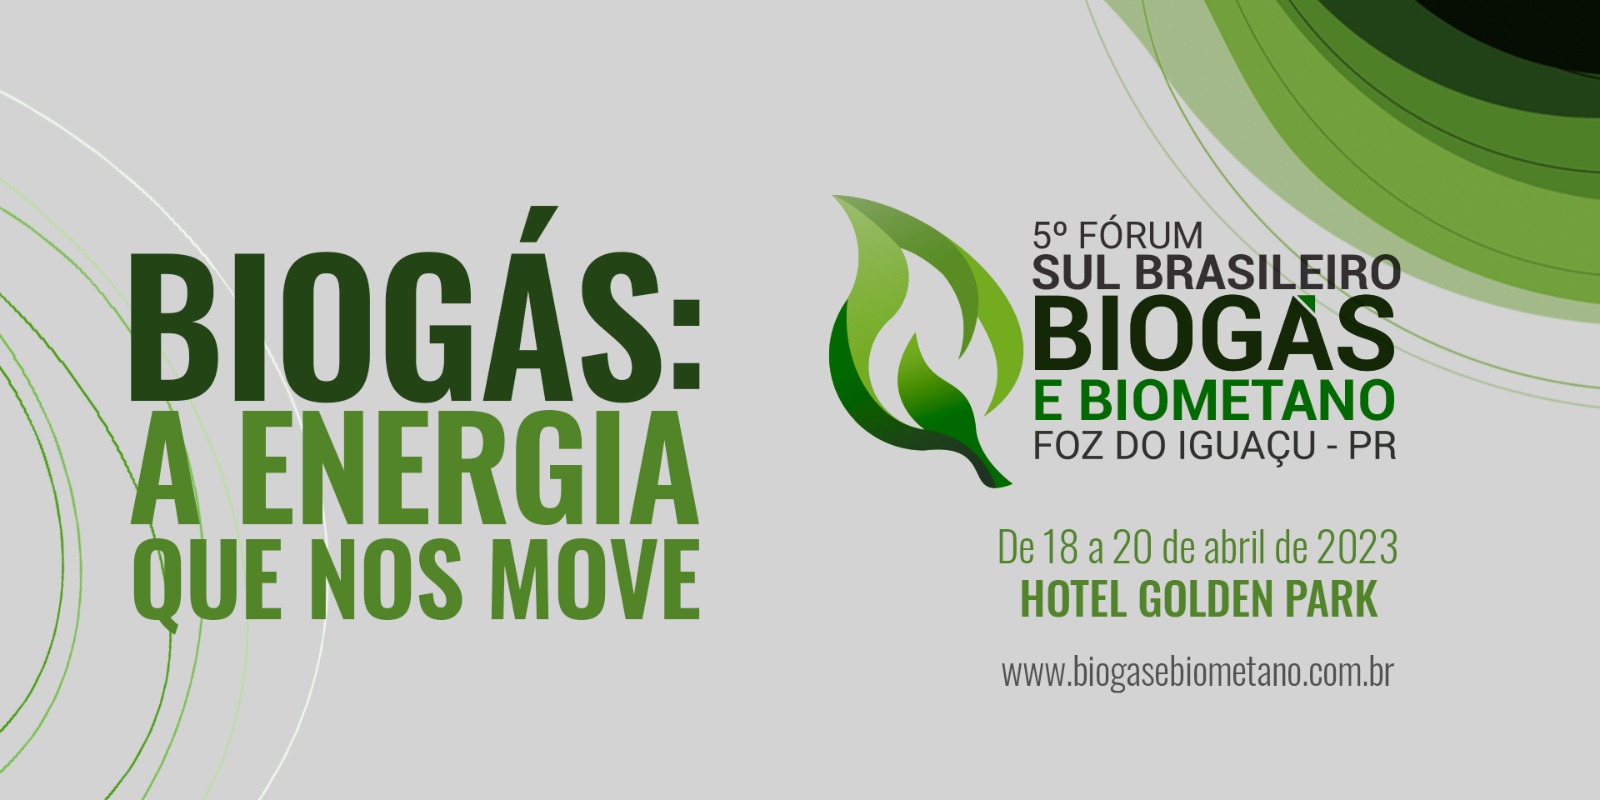 EVENTO: 5º Fórum Sul Brasileiro de Biogás e Biometano vai ocorrer em Foz do Iguaçu